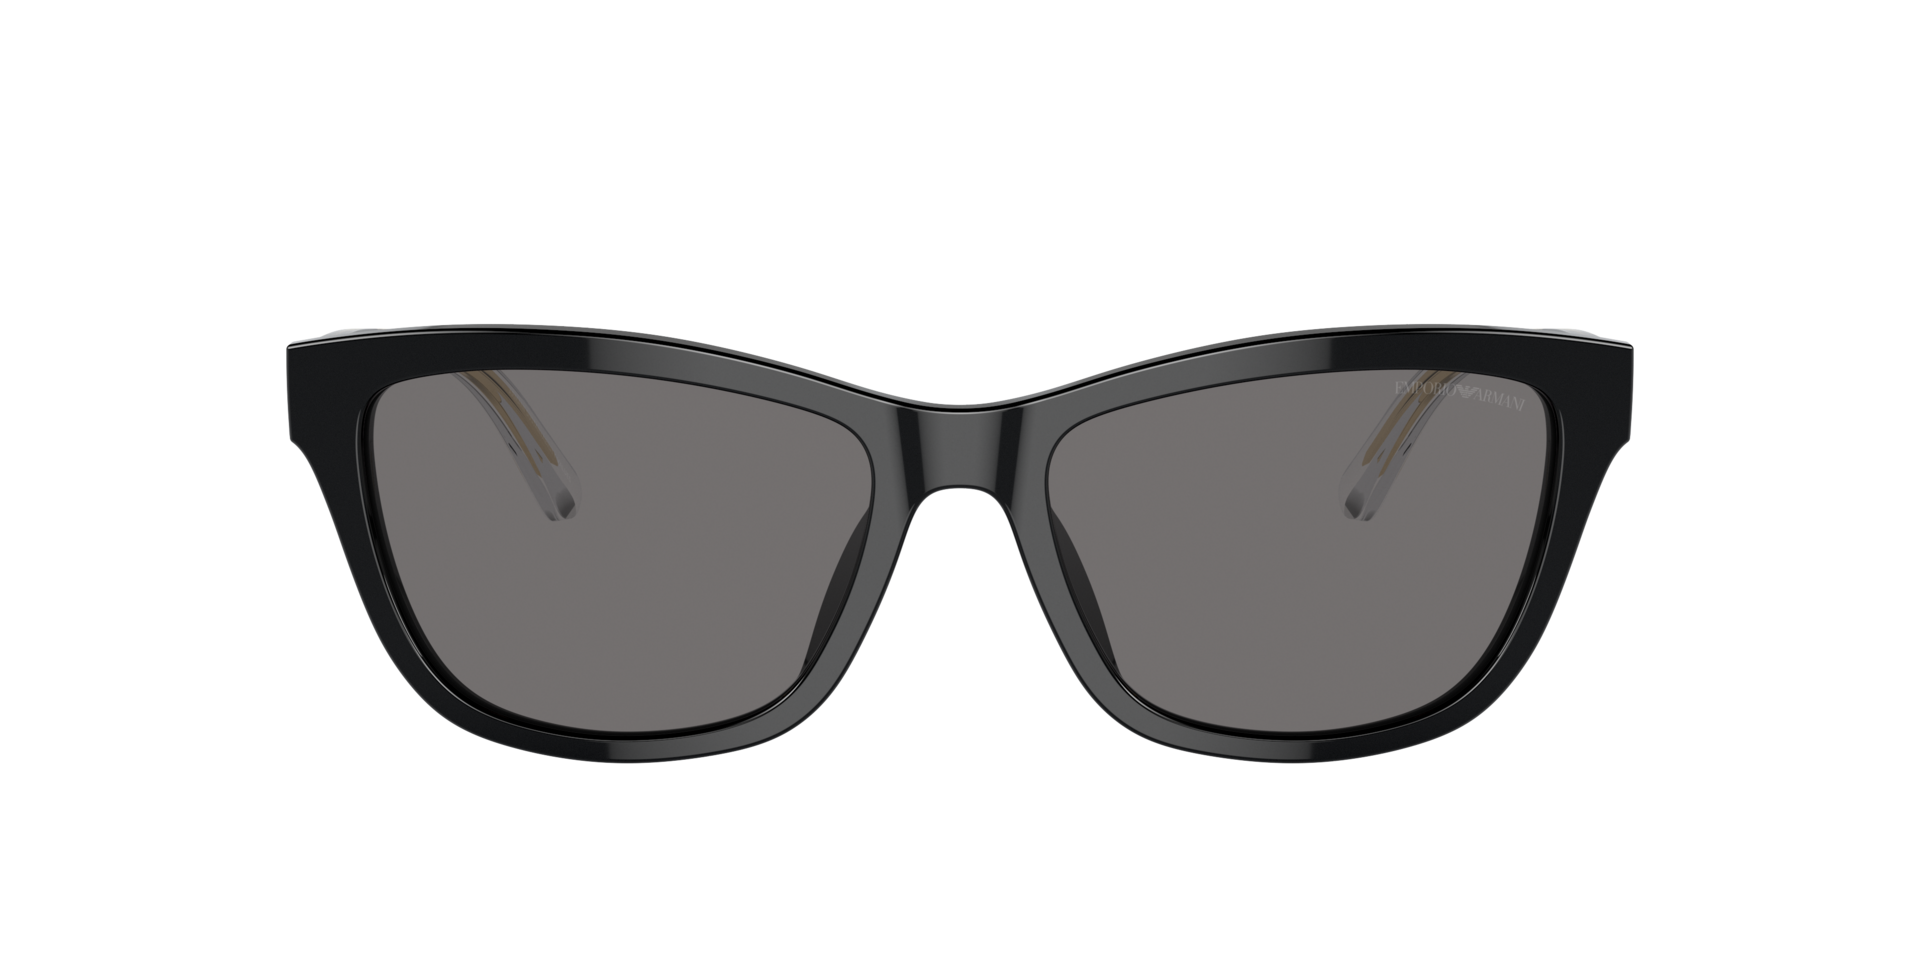 Das Bild zeigt die Sonnenbrille EA4227U 501787 von der Marke Emporio Armani in schwarz.